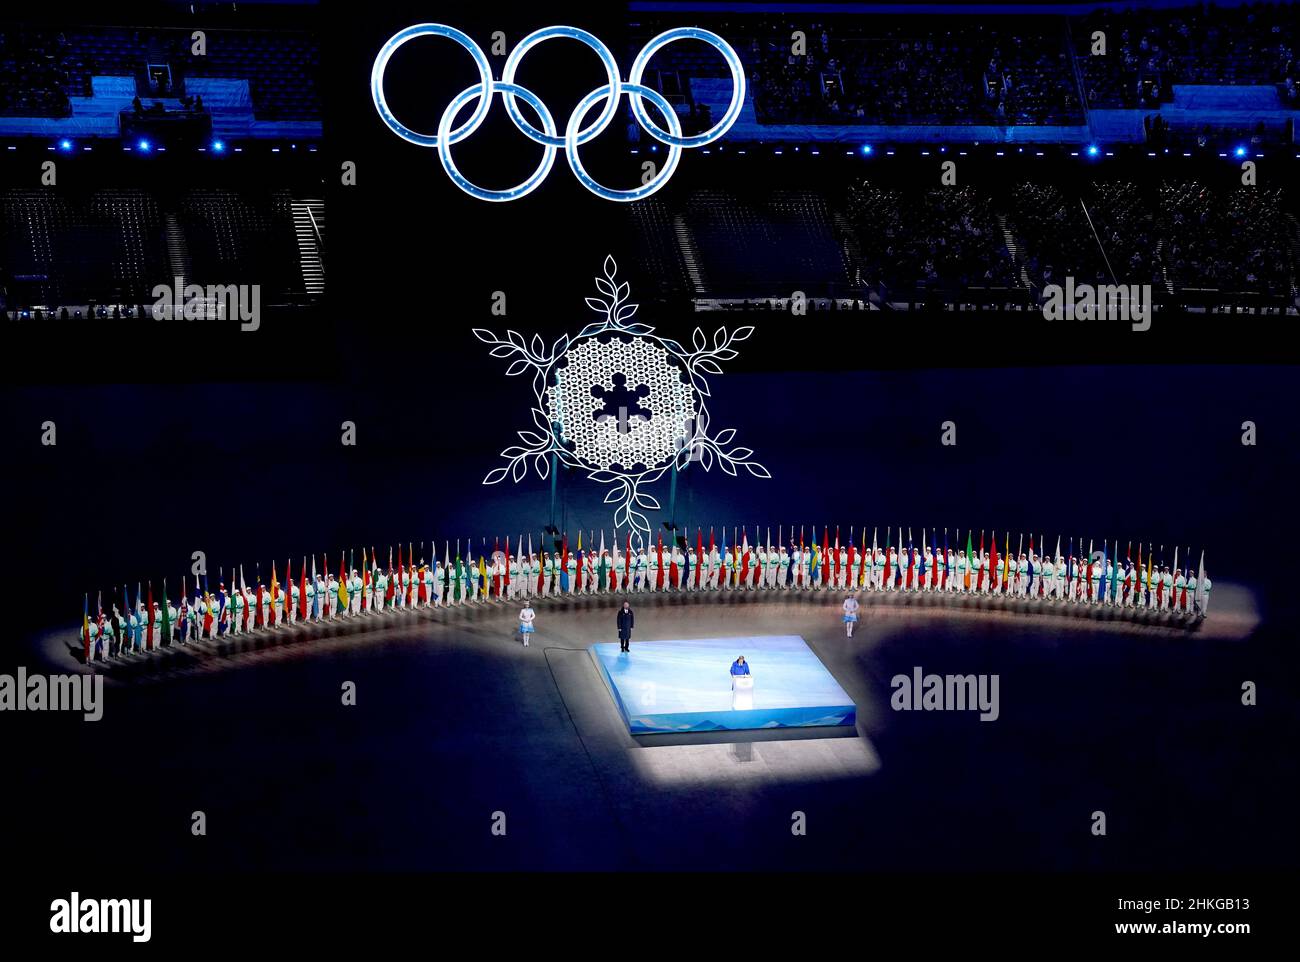 Der Präsident des Internationalen Olympischen Komitees, Thomas Bach, hält eine Rede während der Eröffnungszeremonie der Olympischen Winterspiele 2022 in Peking im Nationalstadion von Peking in China. Bilddatum: Freitag, 4. Februar 2022. Stockfoto